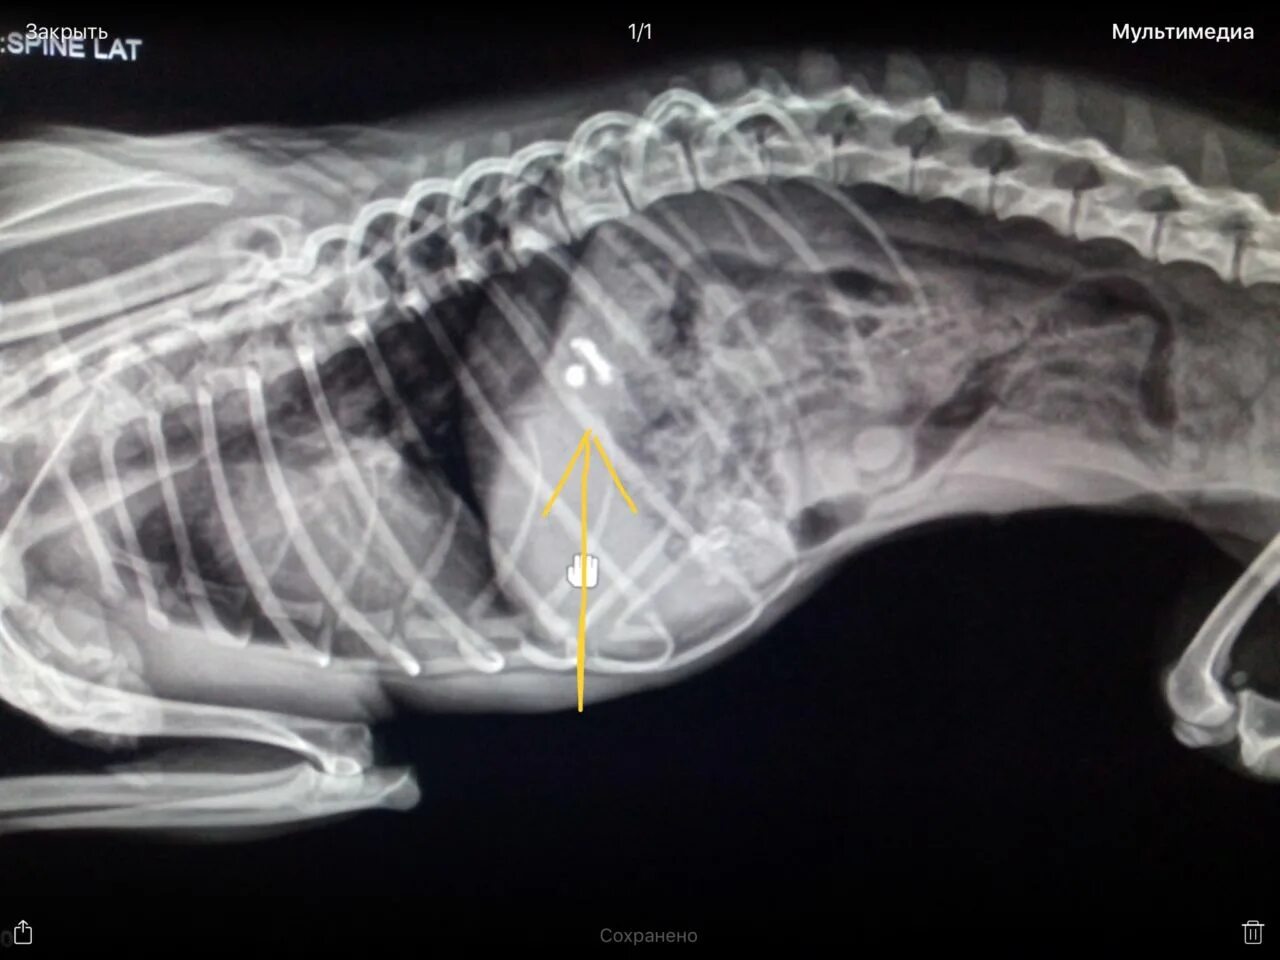 Собака съела пакетик. Инородное тело в желудке у собаки рентген. Предметы которые проглотили собаки. Инородный предмет в желудке у собаки.